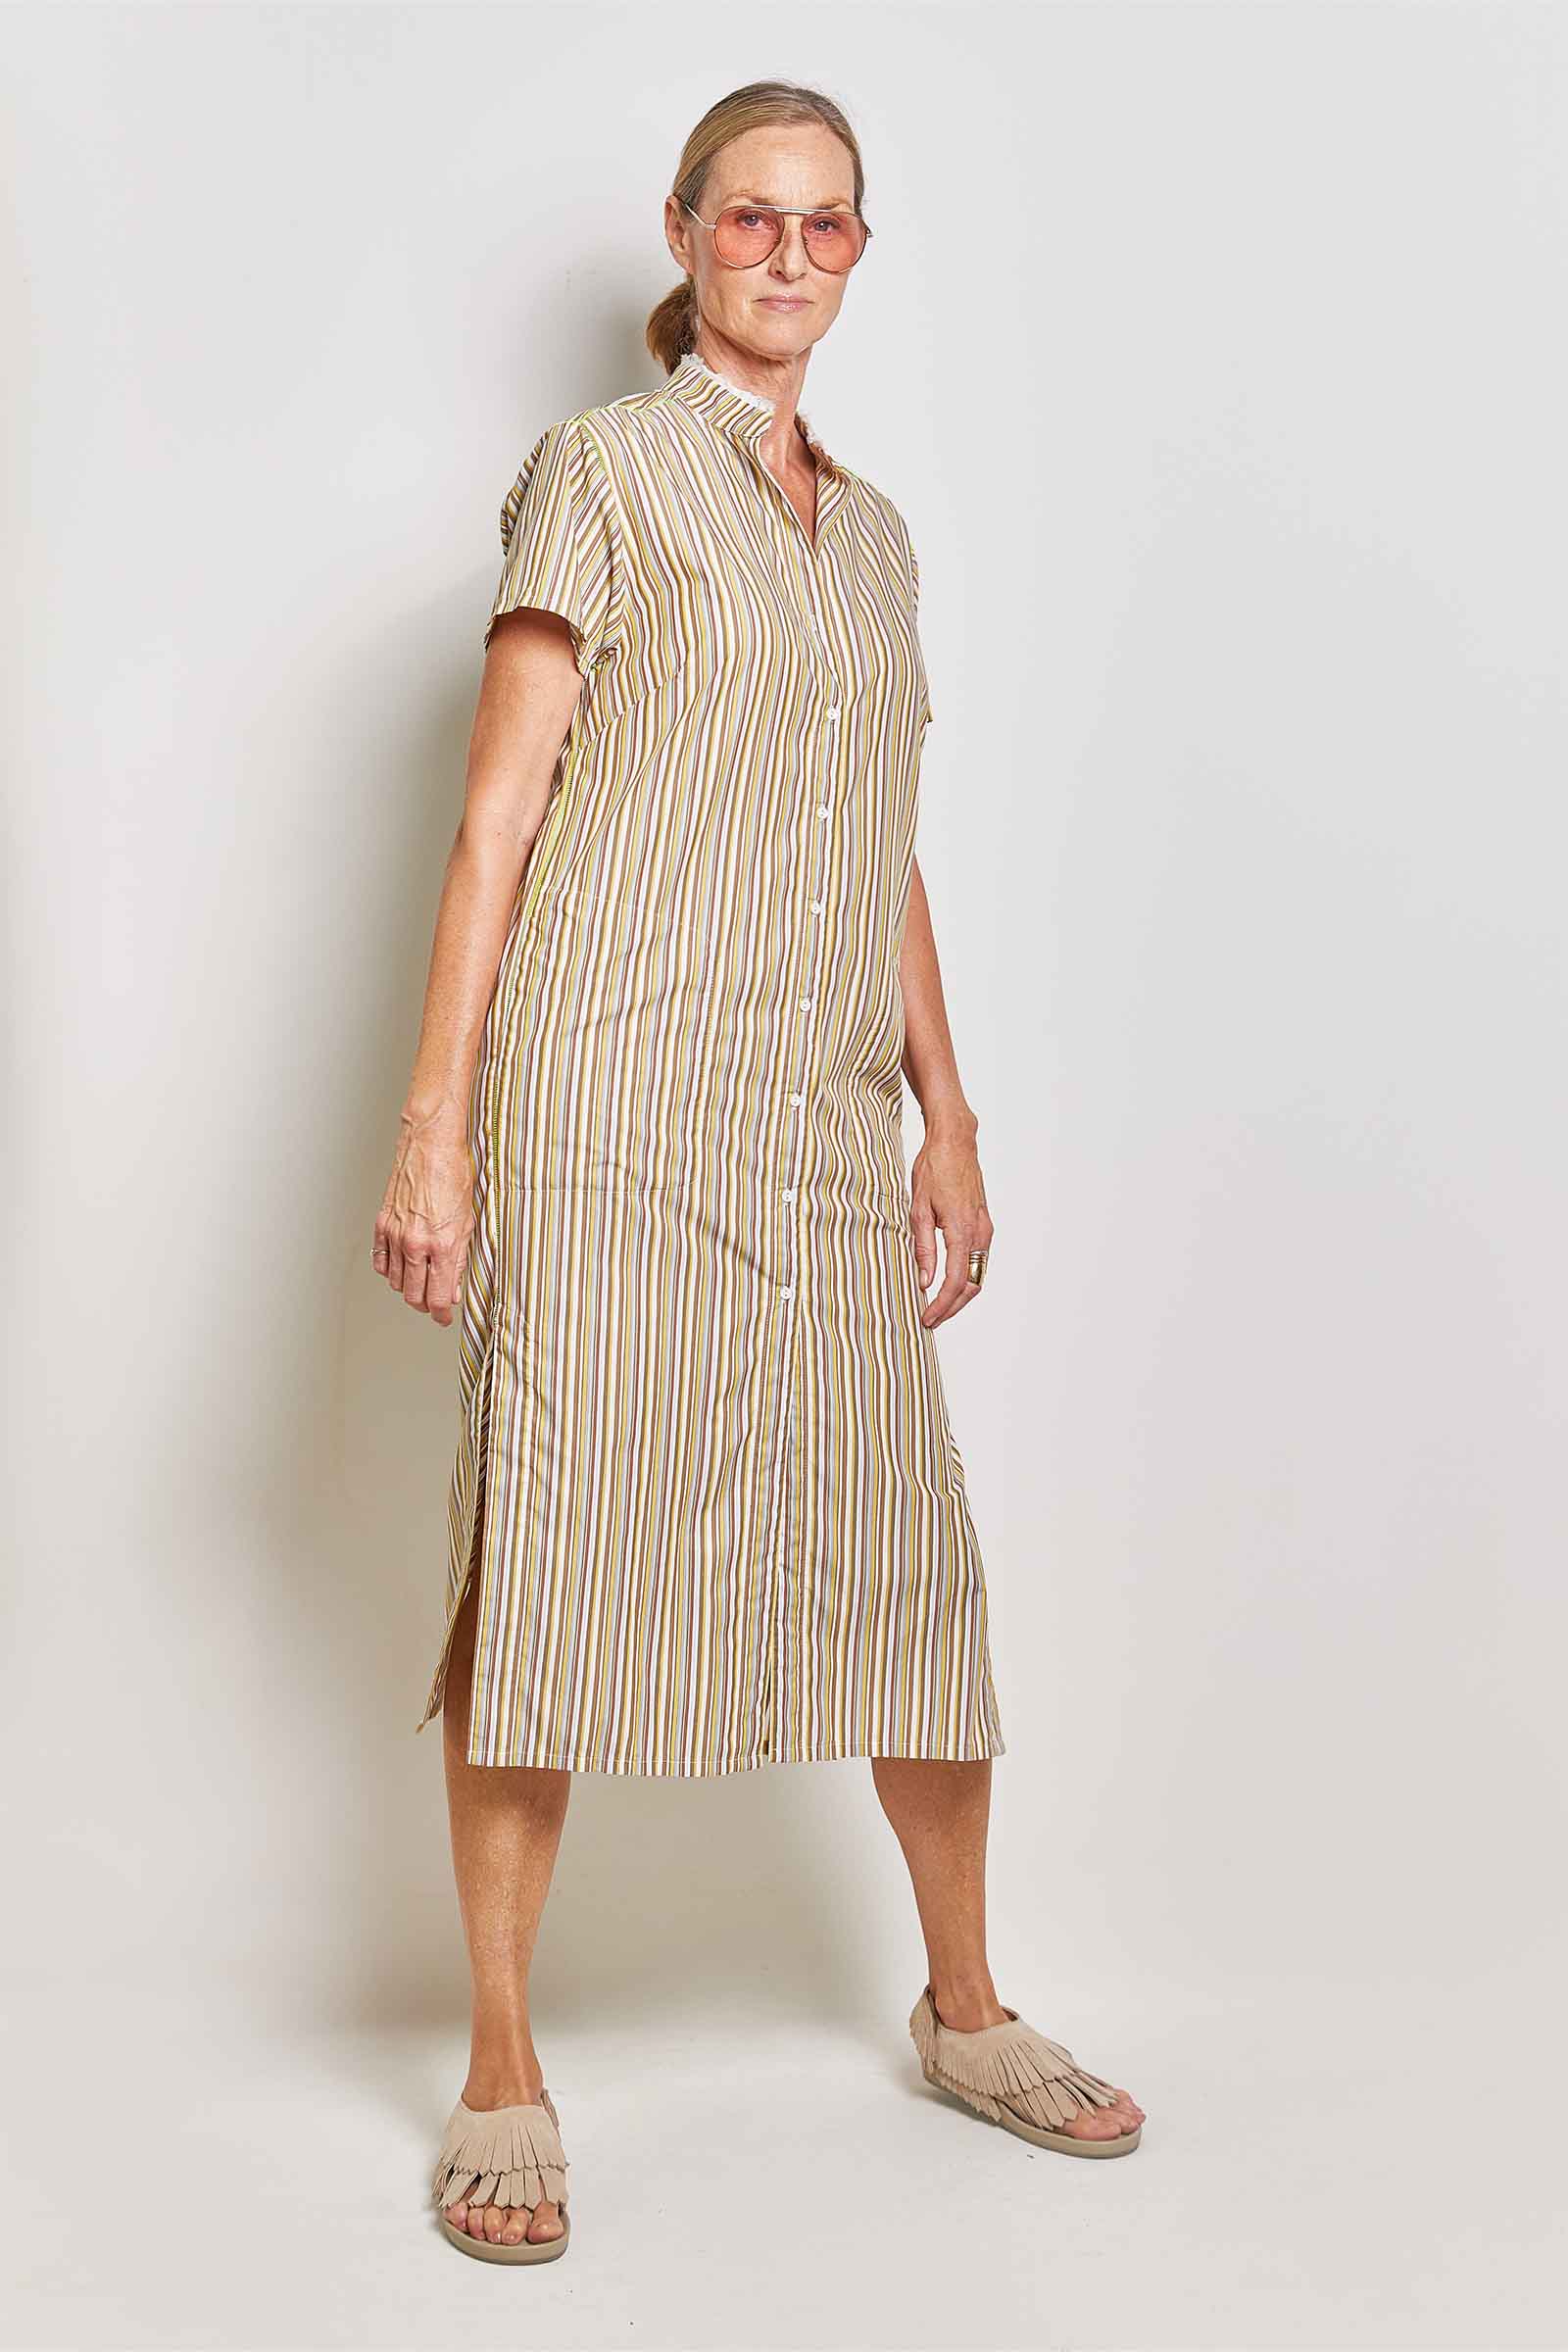 byfreer ginger neutral stripe cotton dress.